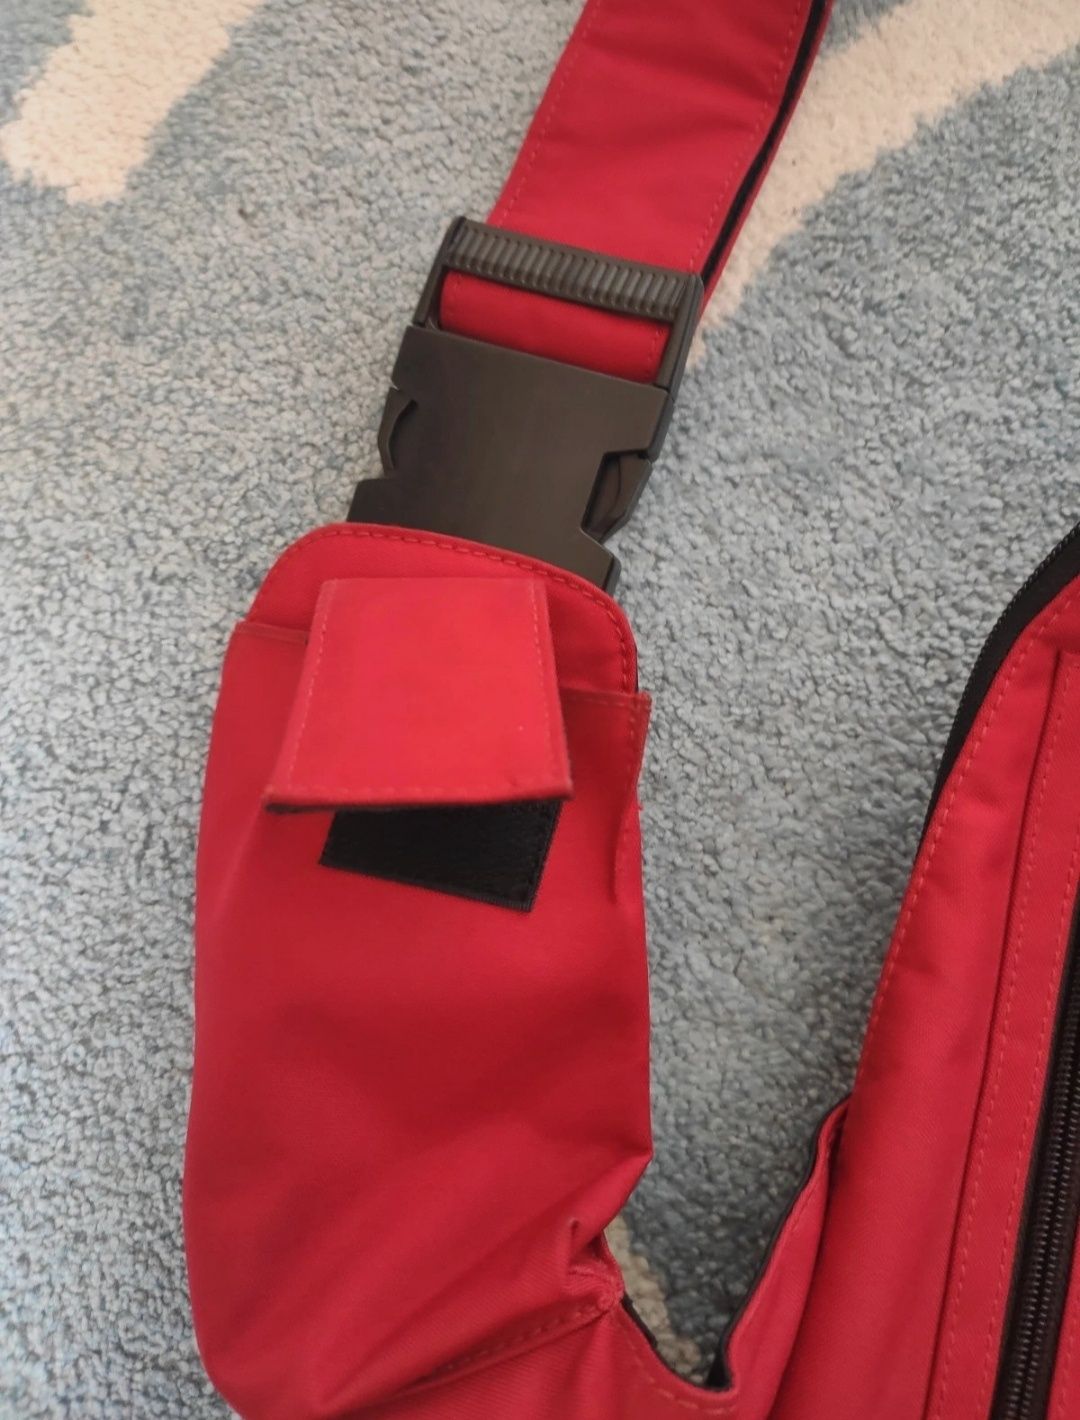 Czerwony plecak torba